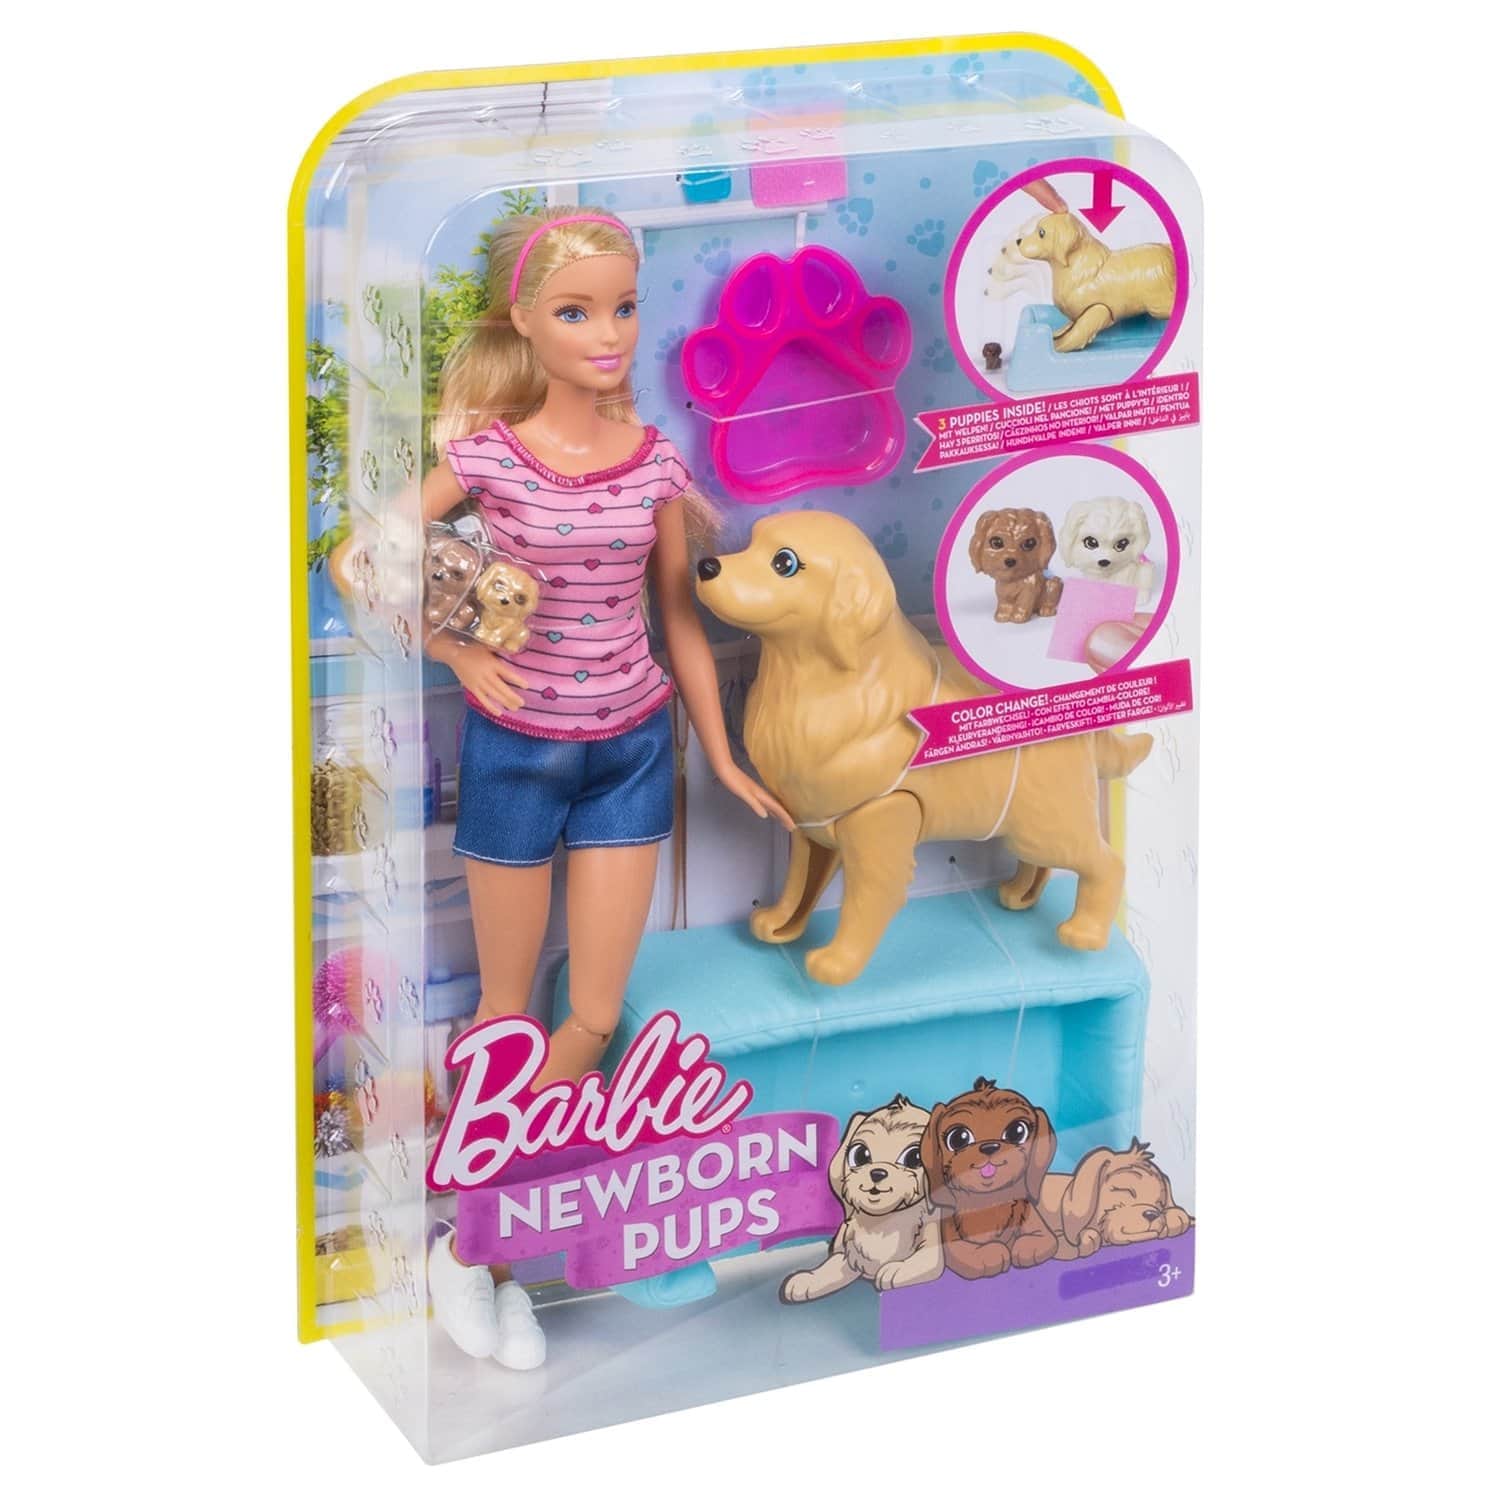 Кукла Barbie и собака с новорожденными щенками, 29 см, FDD43